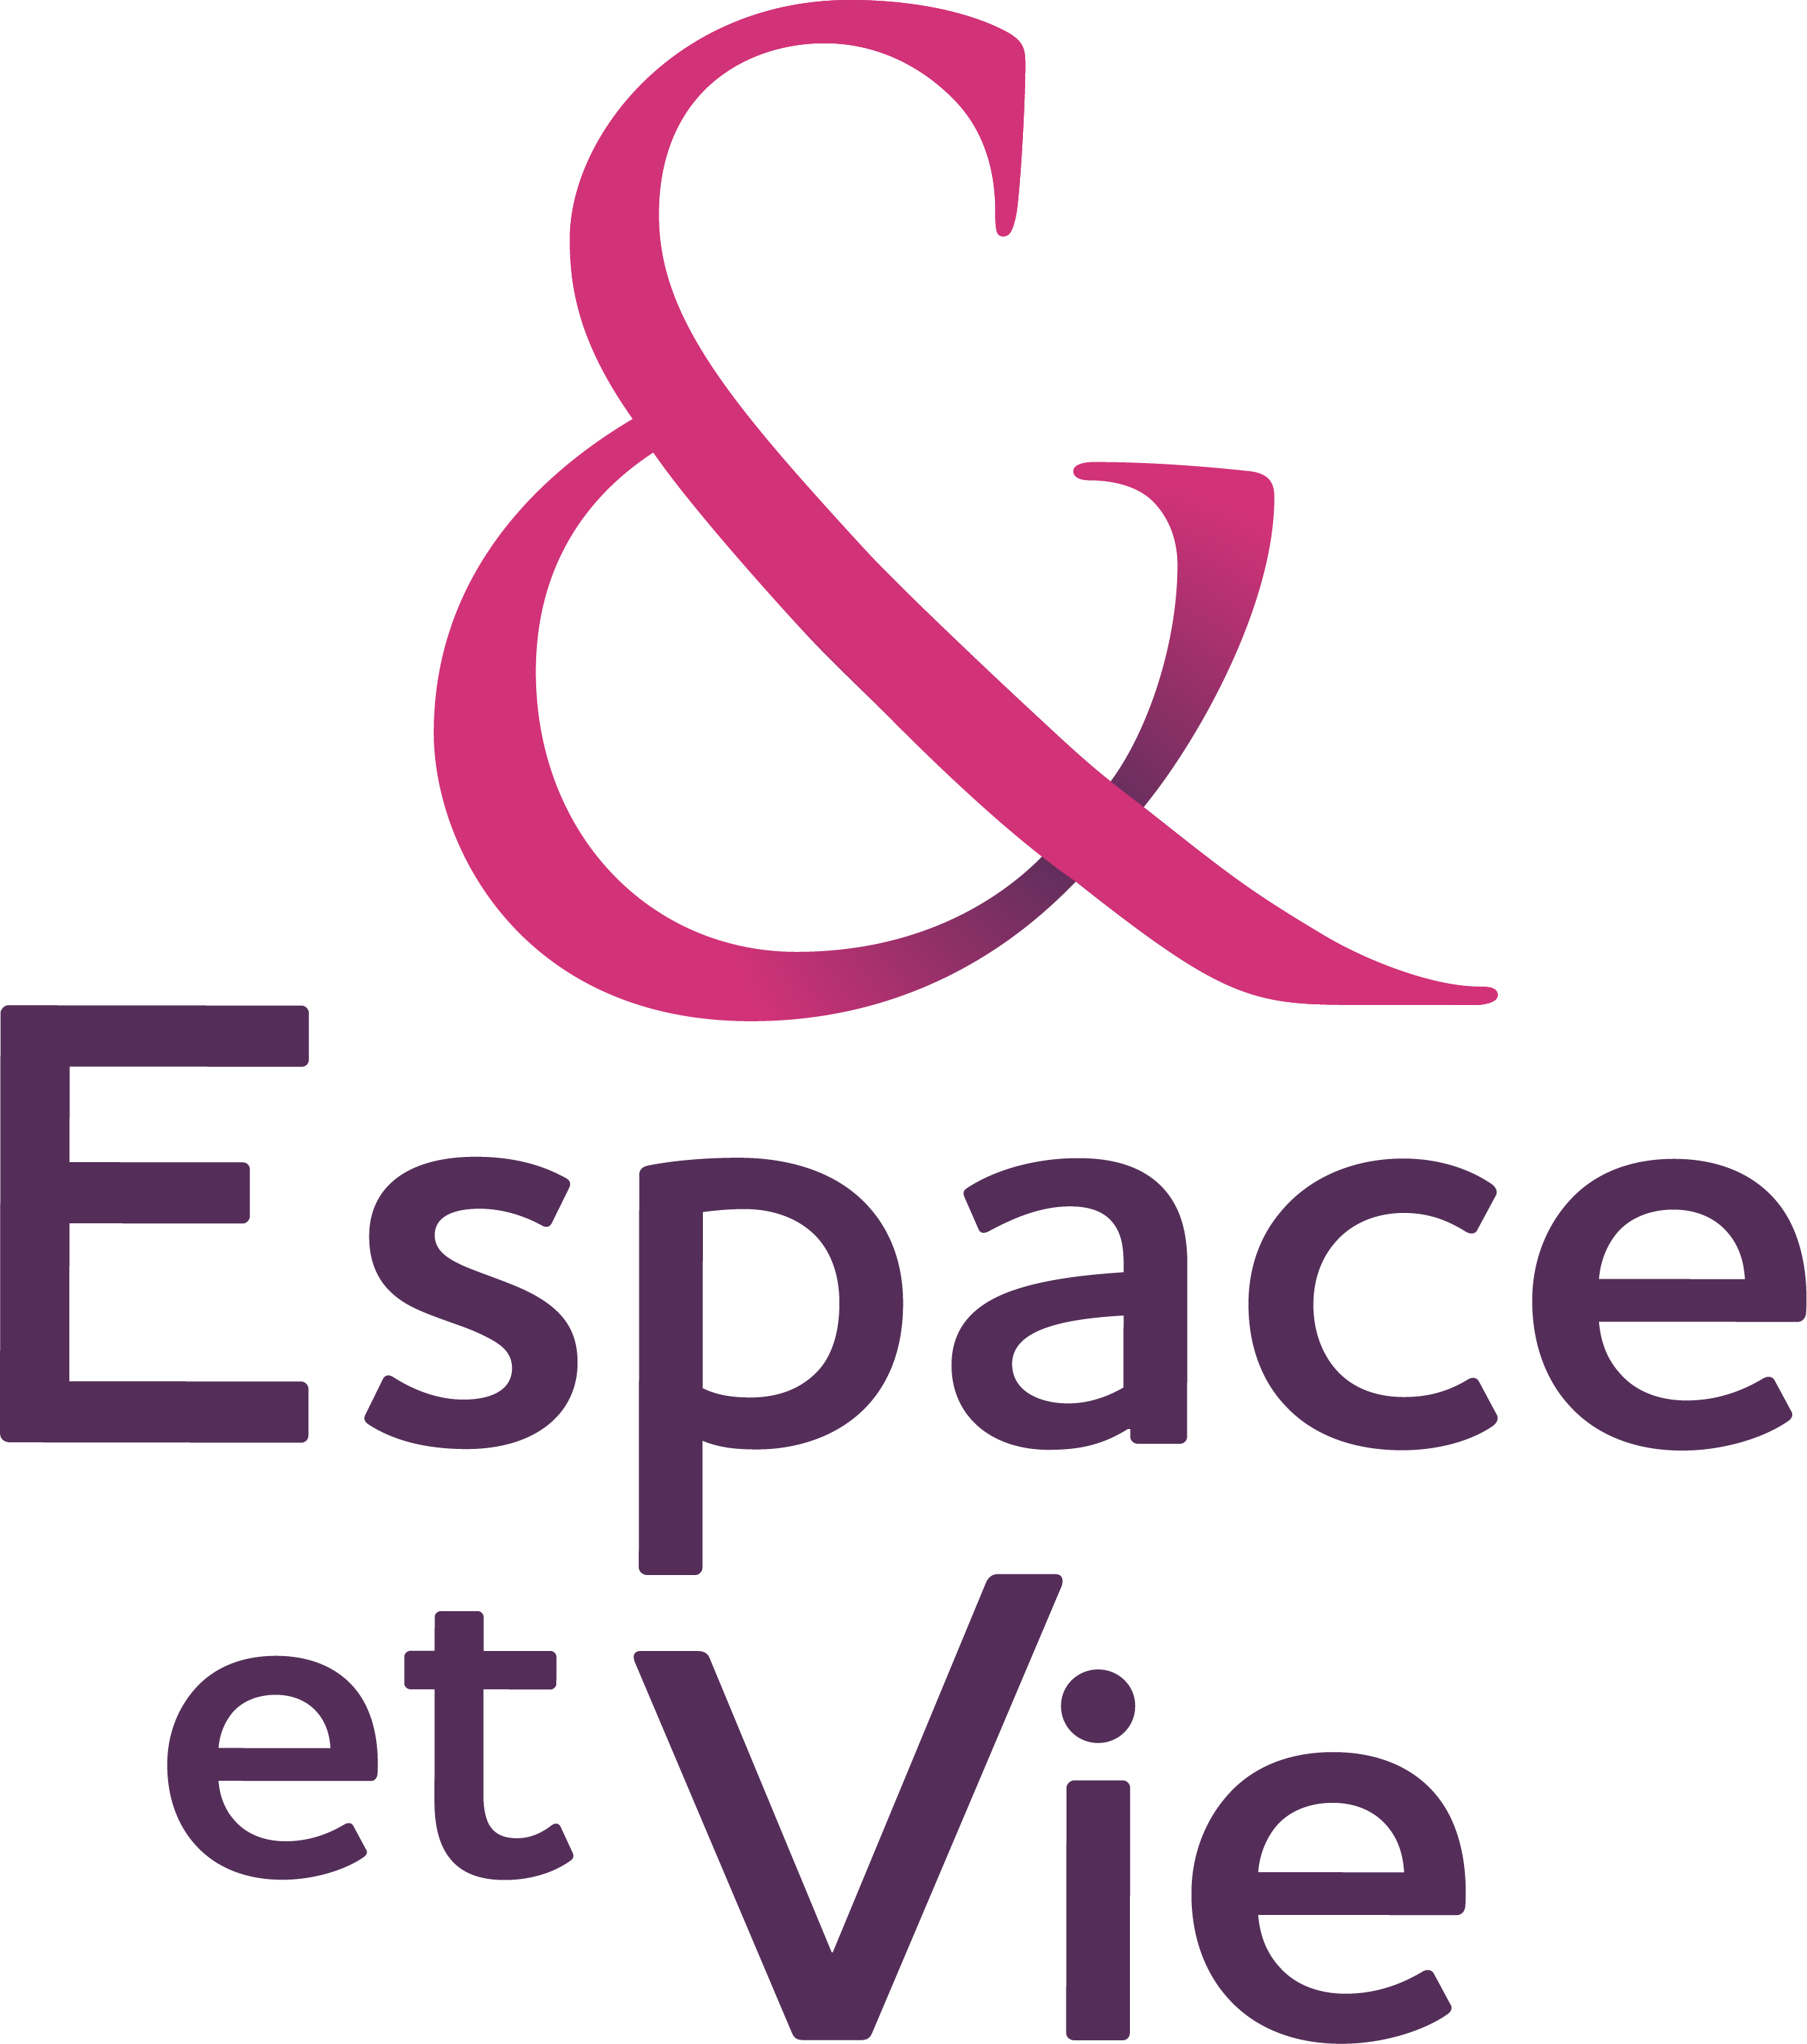 Logo Résidence Espace et Vie Carnac